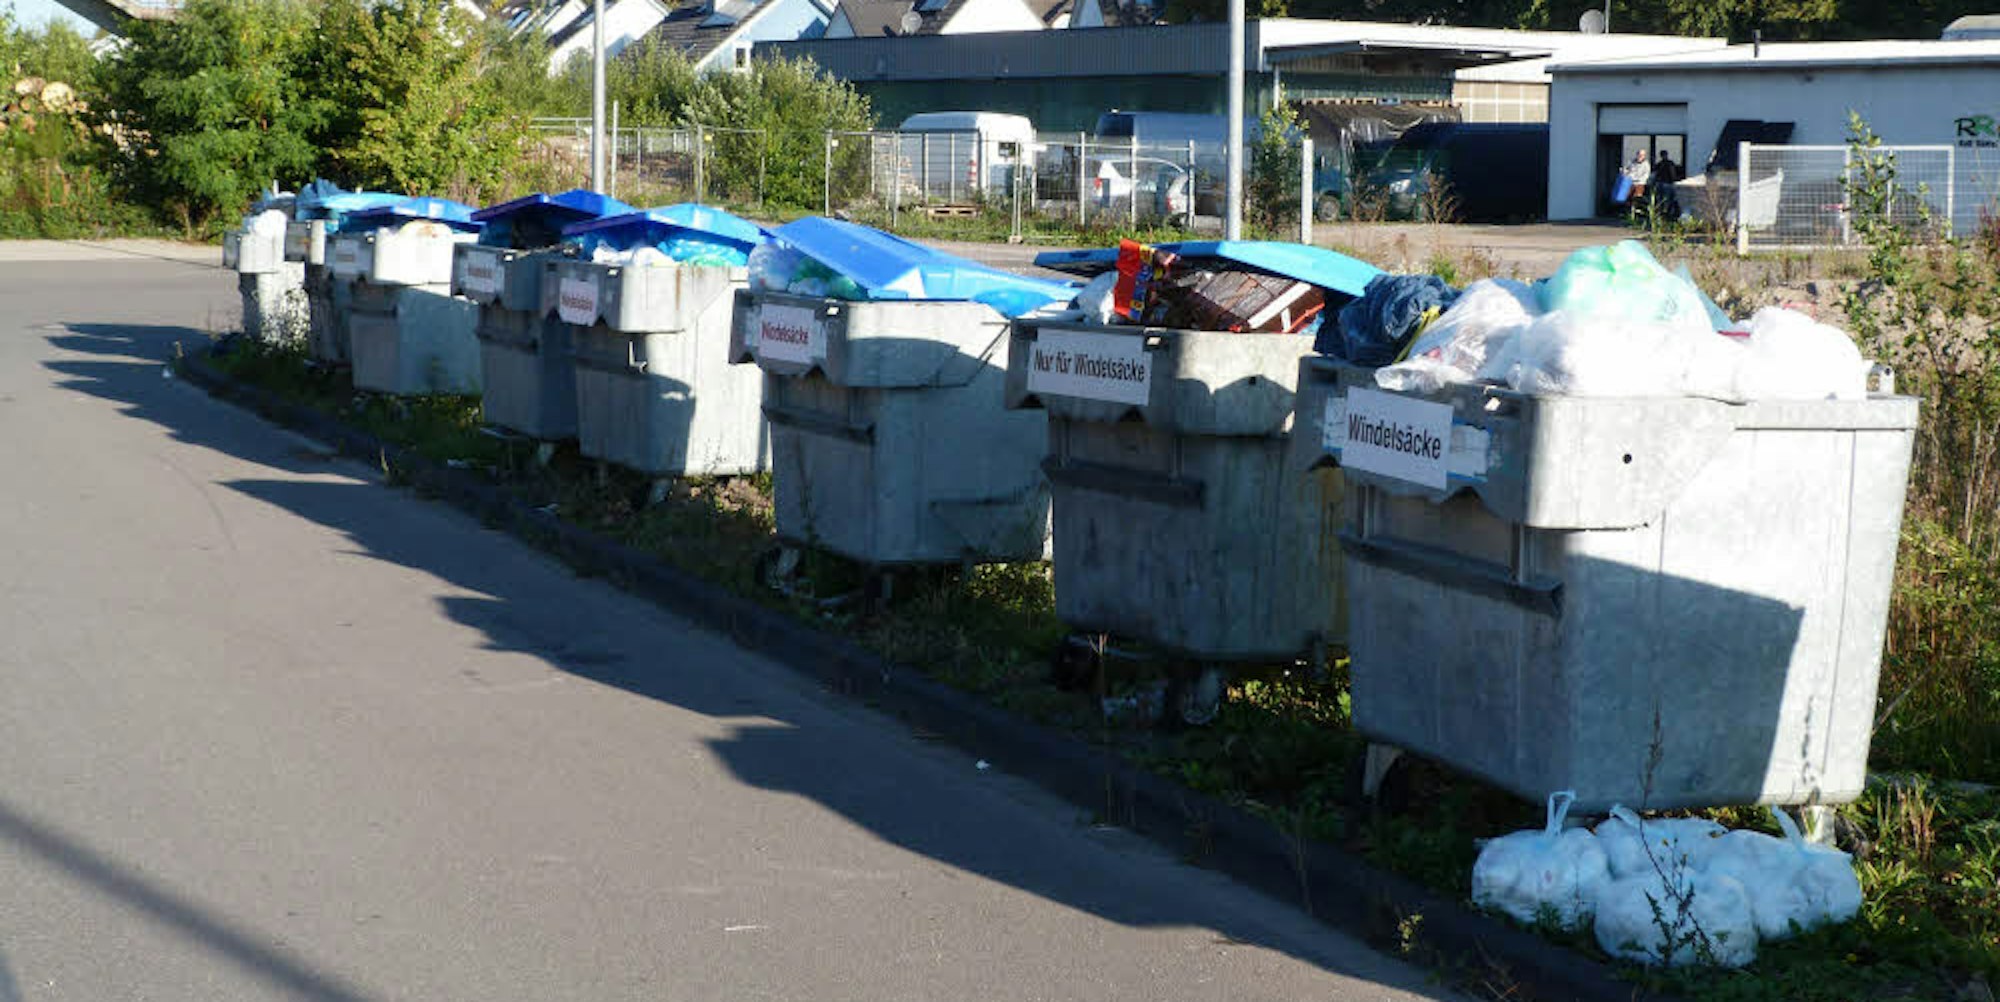 Schandfleck: Die frei zugänglichen Müllcontainer vor dem Bauhof sollen verschwinden. Wipperfürther Bürger sollen künftig zu bestimmten Zeiten dreckige Windeln im Bauhof entsorgen können.